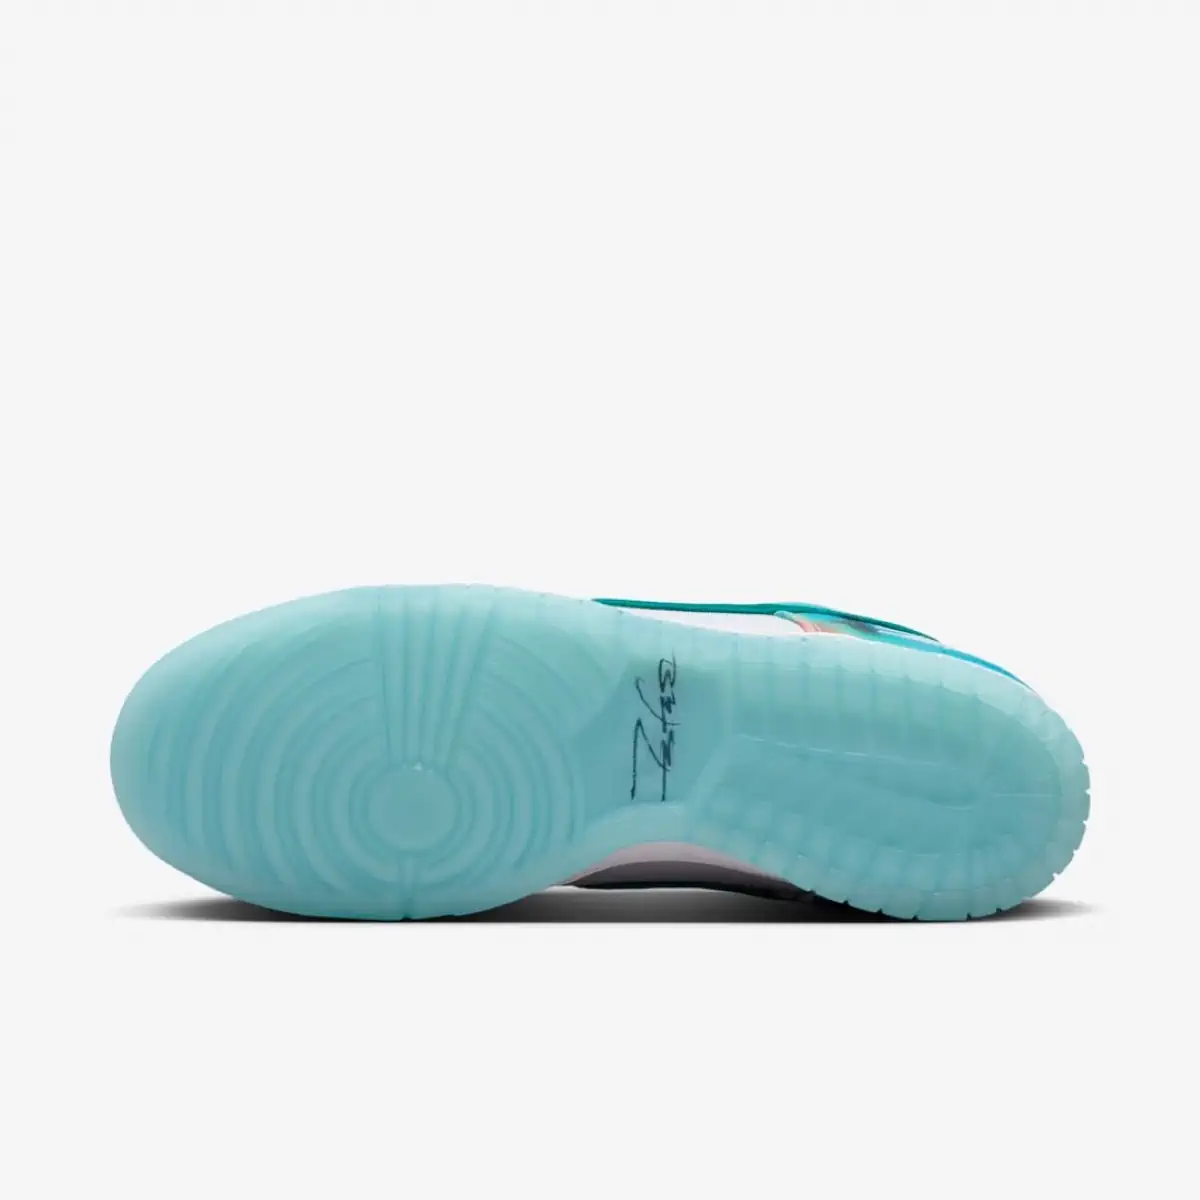 La vision artistique de Futura prend son envol sur la nouvelle Nike SB Dunk Low